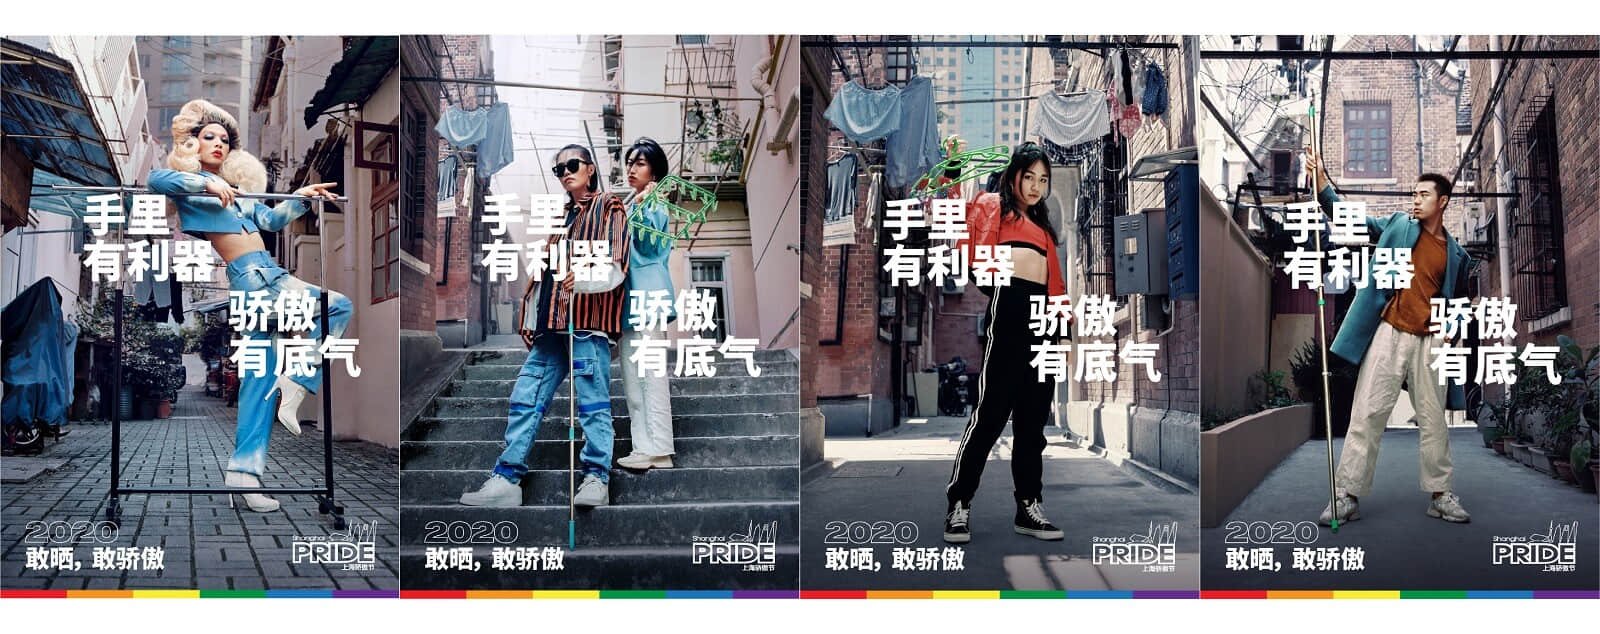 彩虹将尽：上海骄傲节将停止举办 中国LGBTQ族群能见度再被限缩 -1